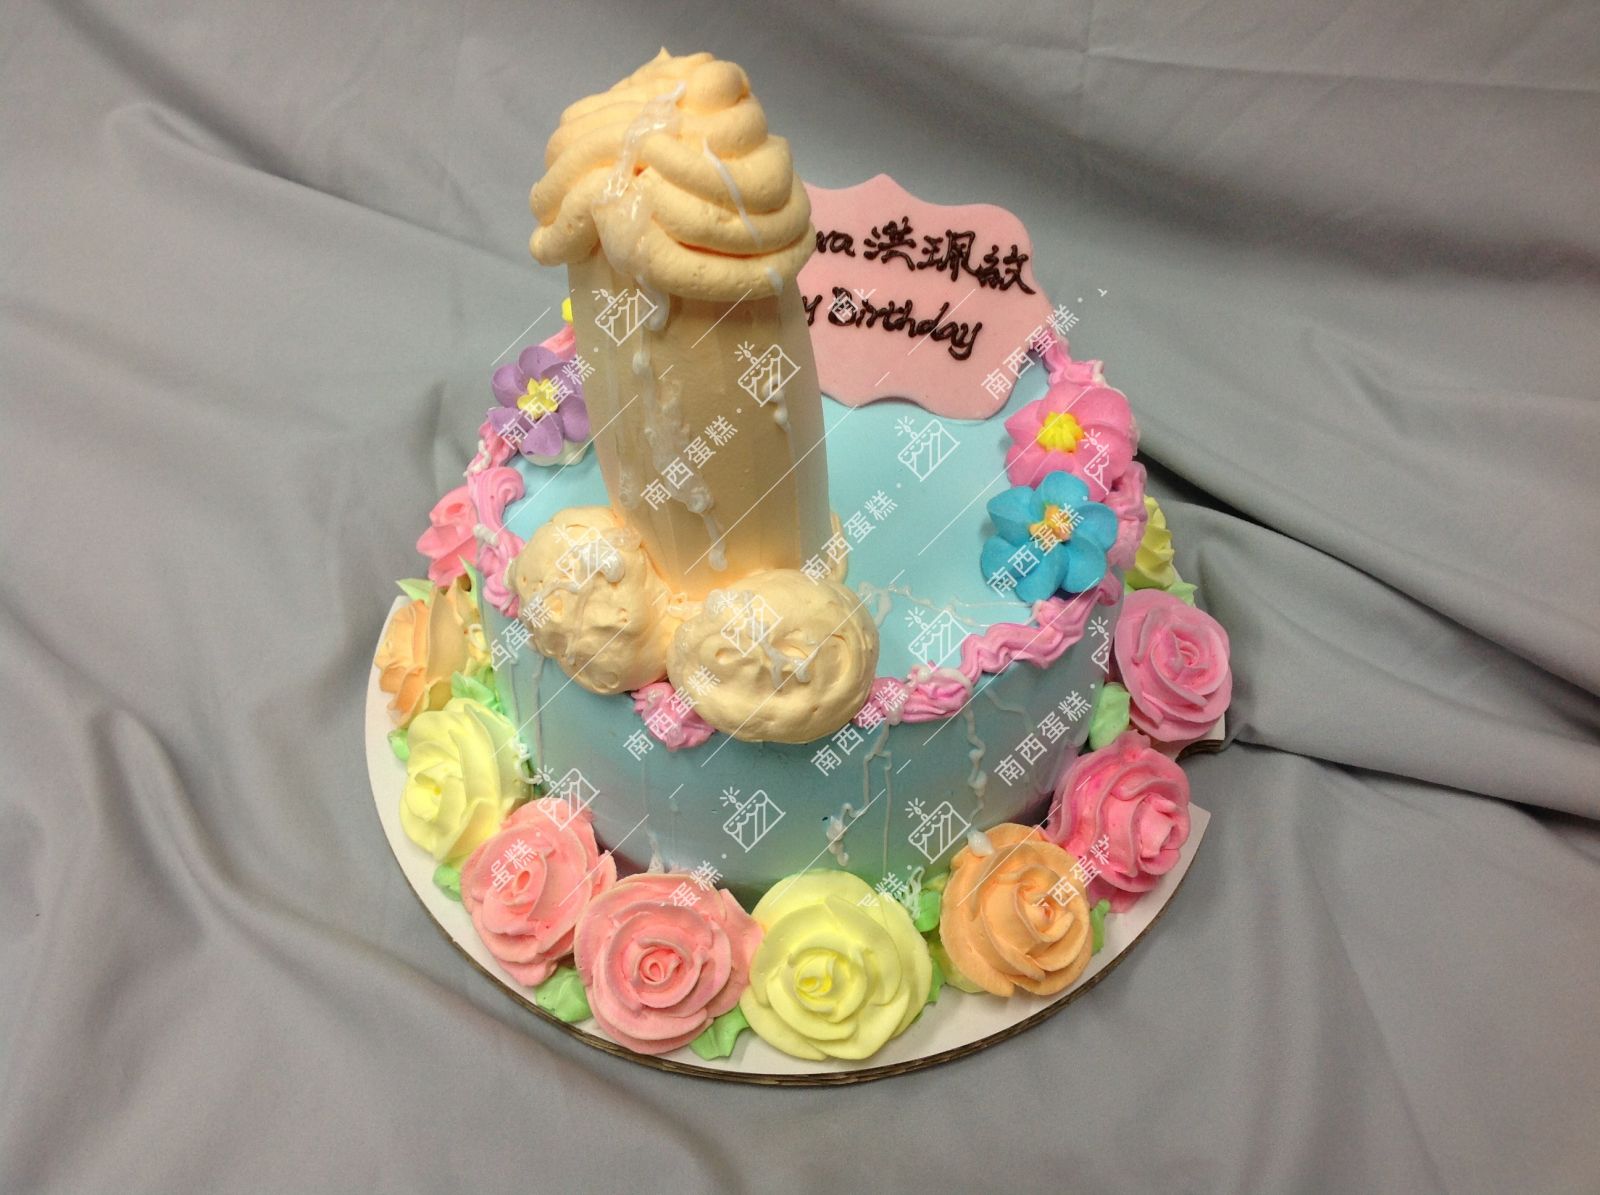 台北猛男巨根造型蛋糕-南西蛋糕